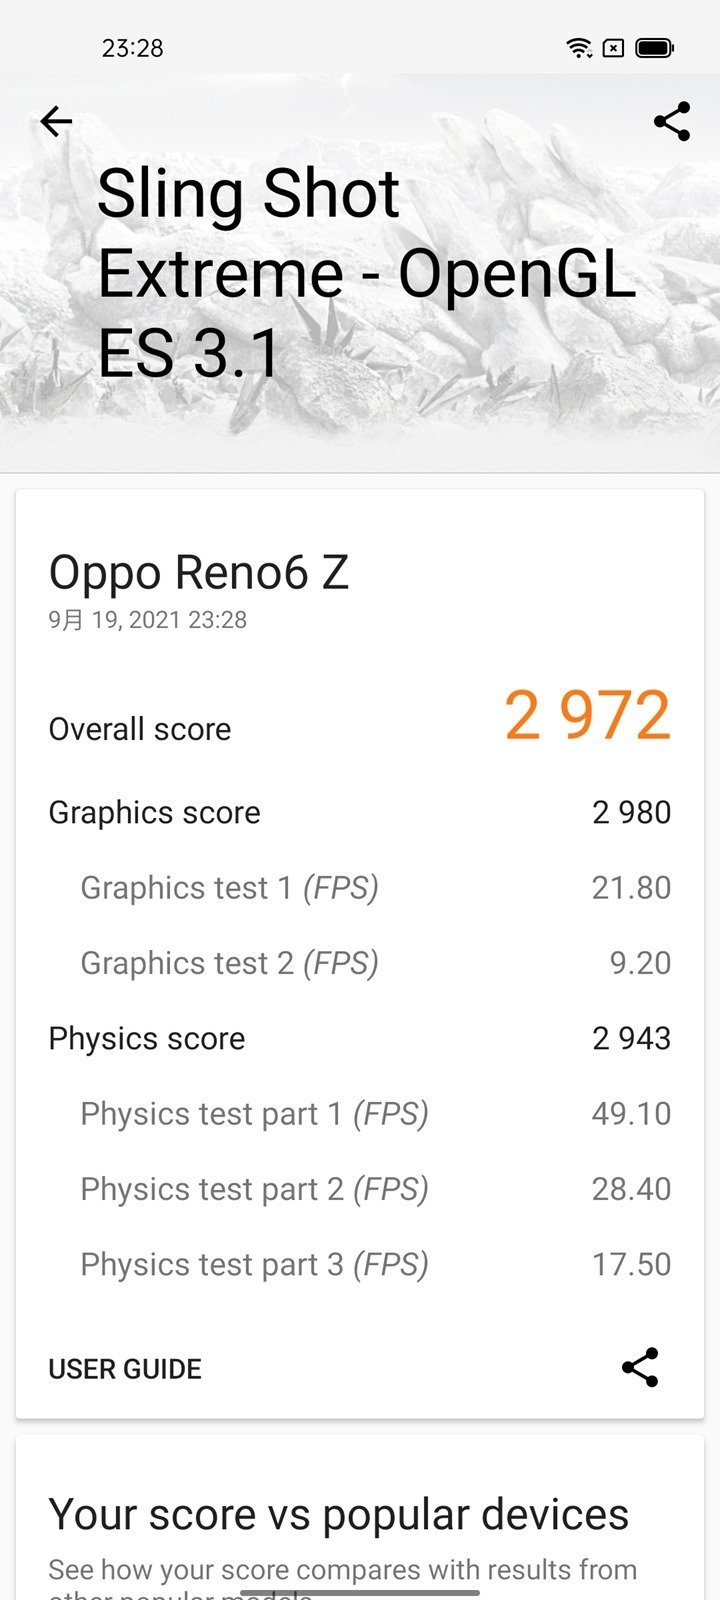 輕鬆入手輕薄 OPPO Reno 6Z 開箱電力性能實測 + 相機實拍分享 @3C 達人廖阿輝